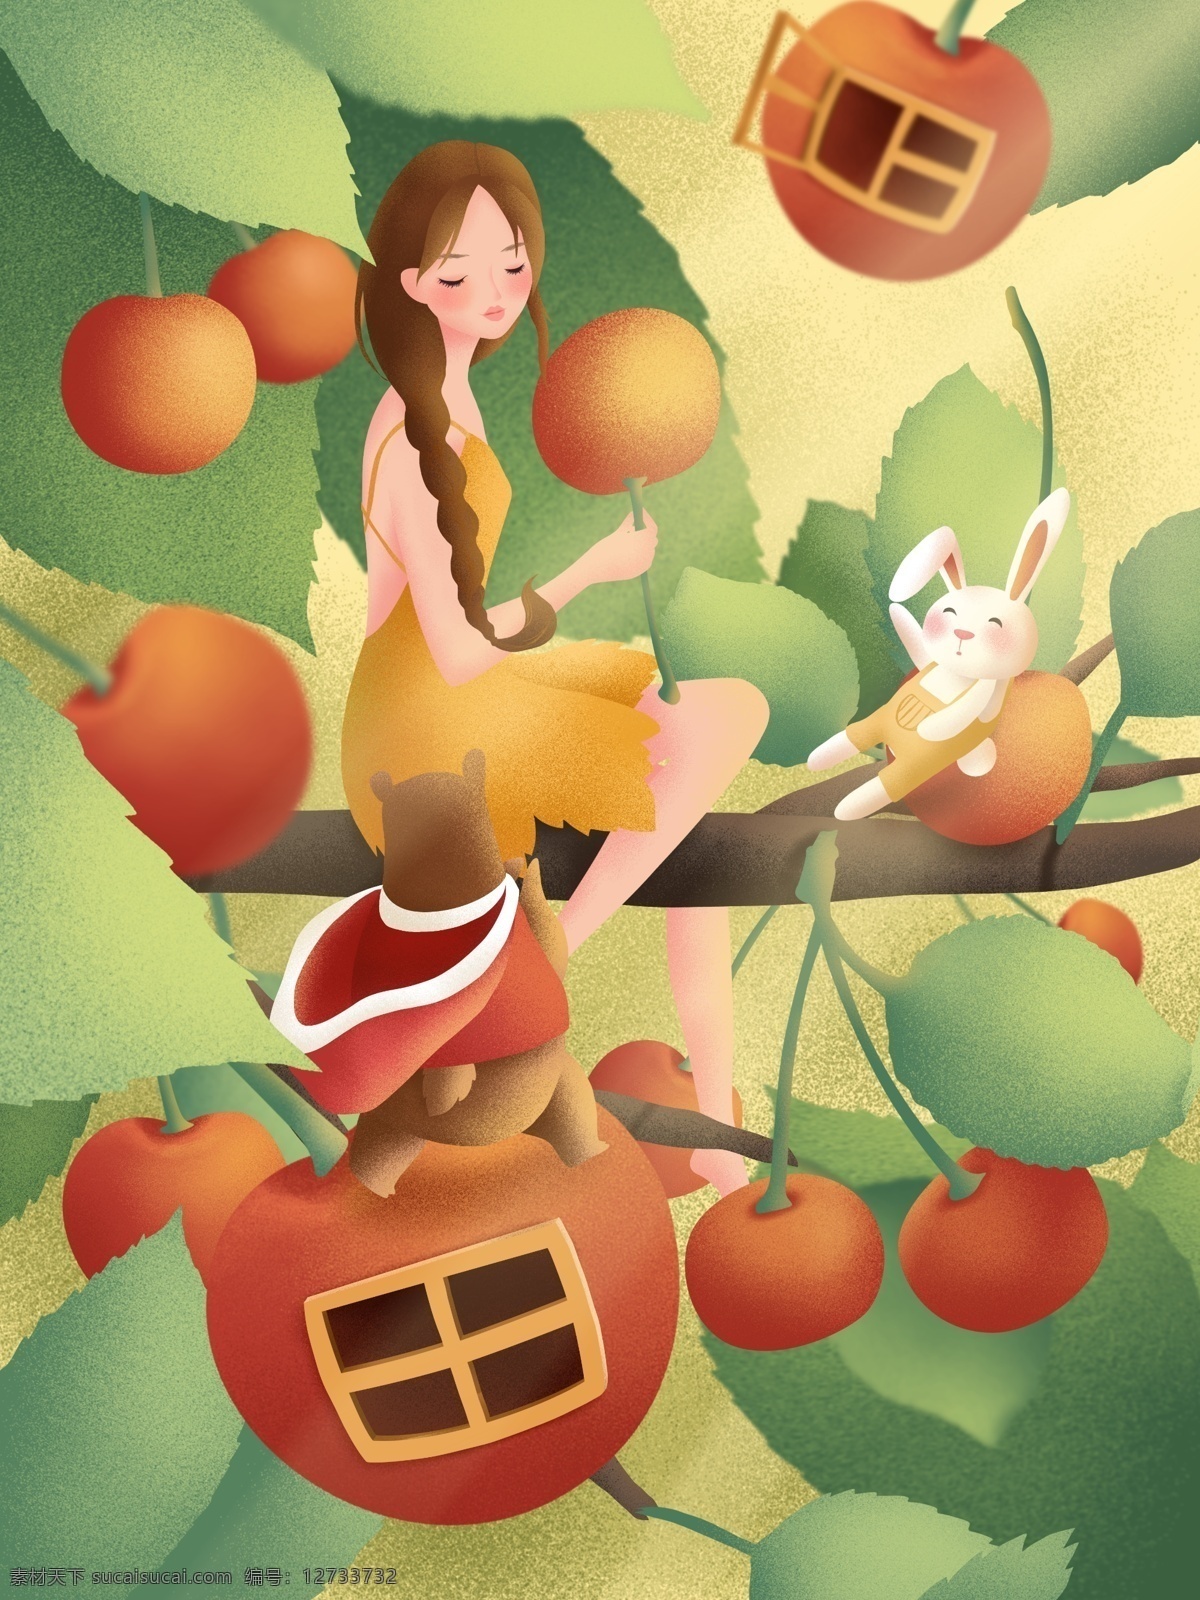 原创 手绘 插画 创意 水果 女孩 樱桃 植物 清新 手绘插画 兔子 熊